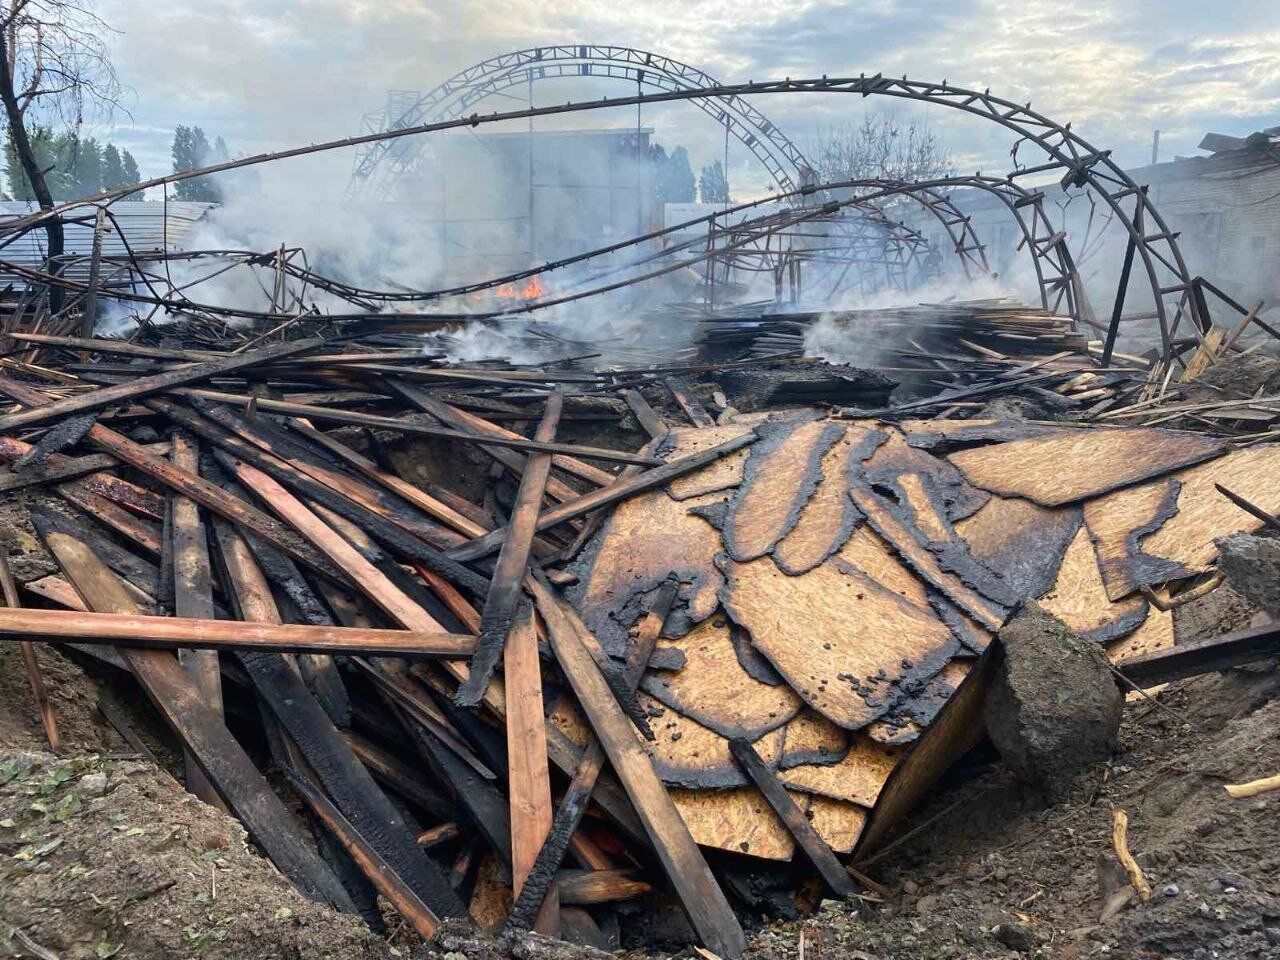 В Харькове в результате вражеских обстрелов сгорел склад с древесиной, а в области – ангар с зерном